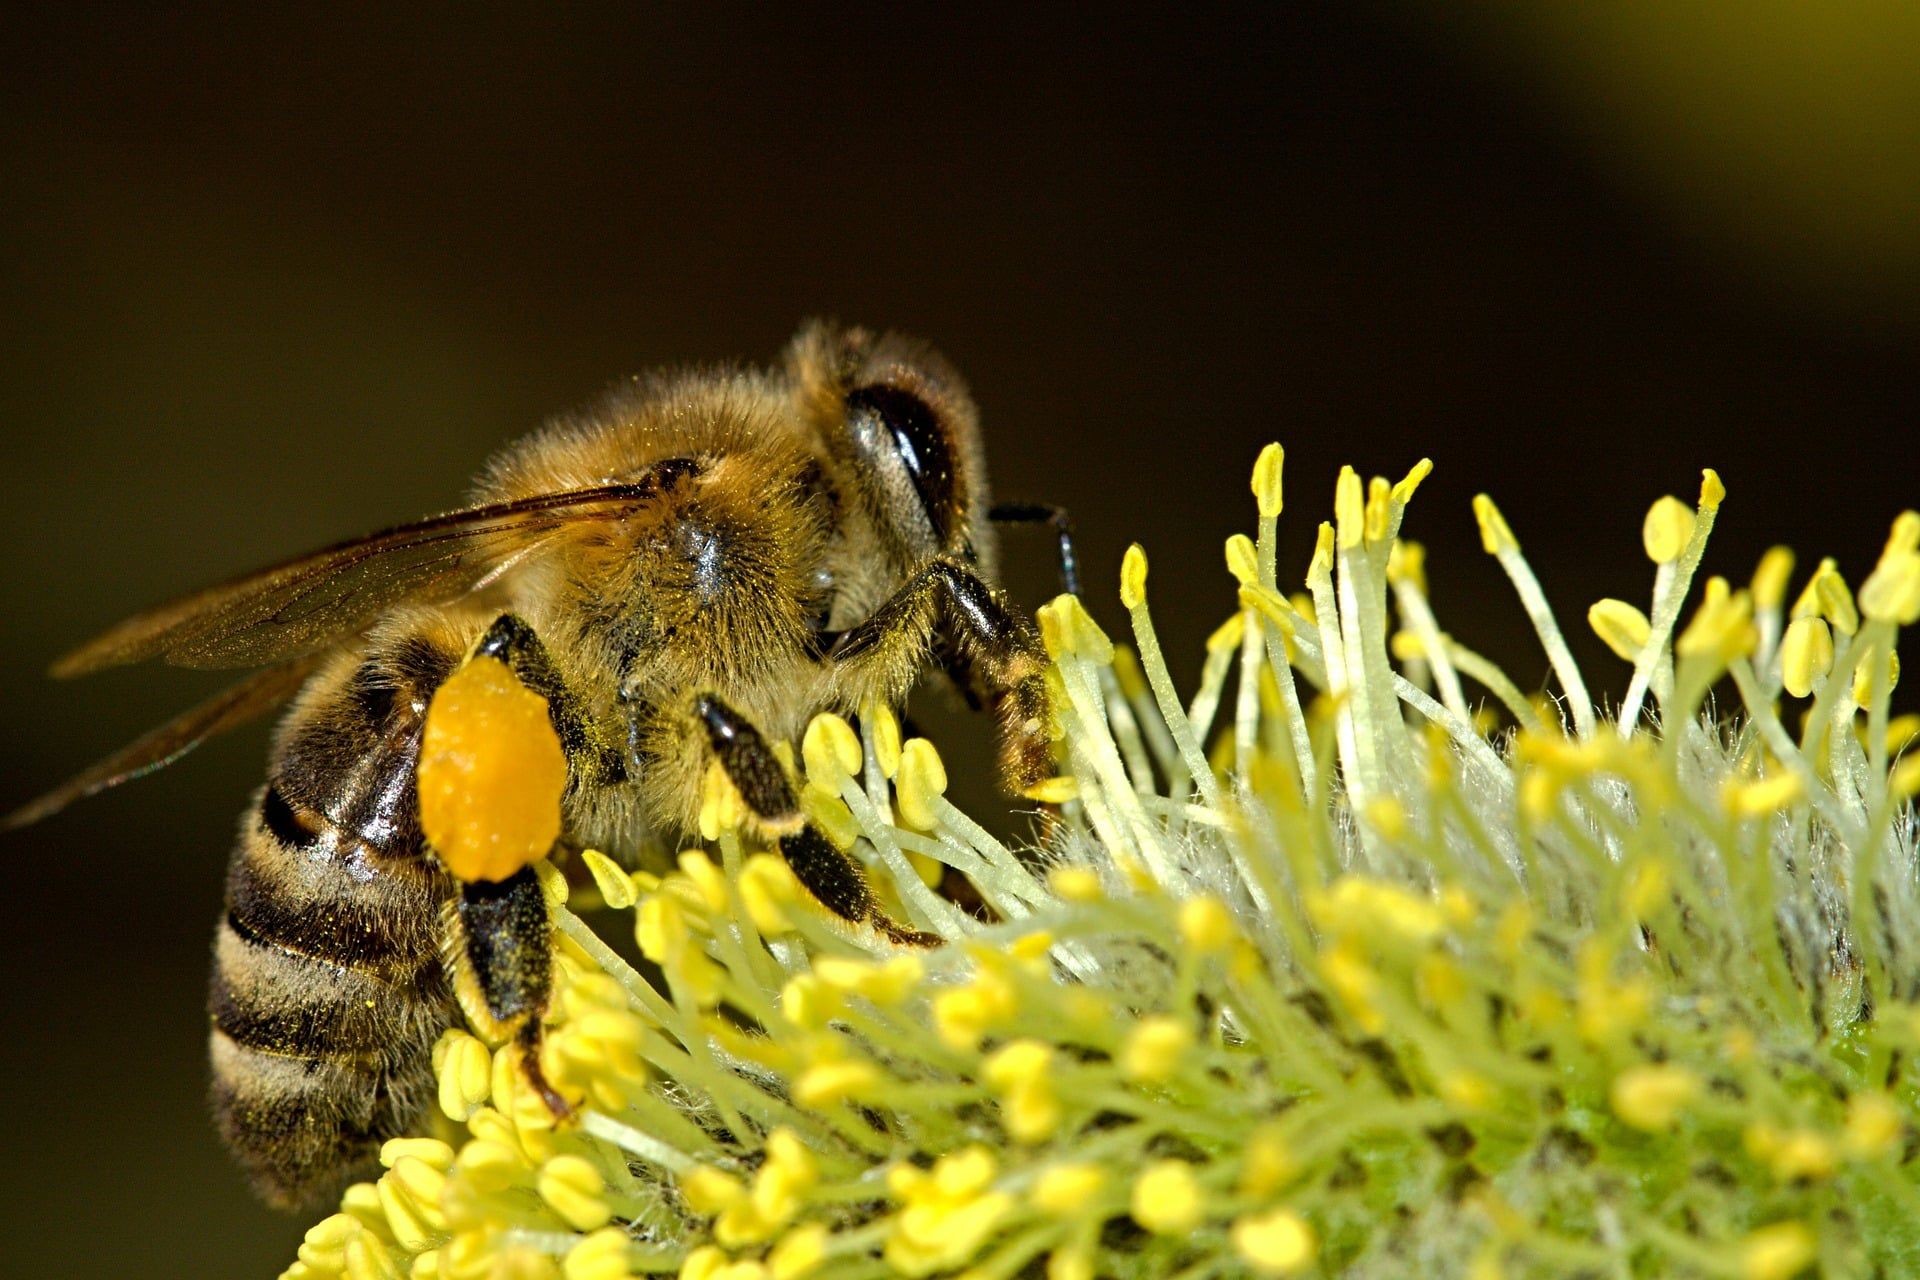 Honey Bee collectingpollen from flower.